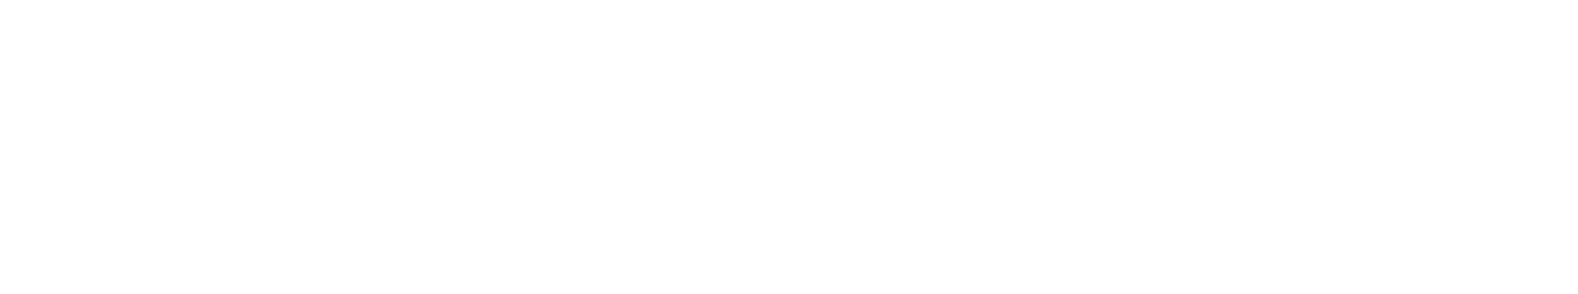 Aenza logo grand pour les fonds sombres (PNG transparent)